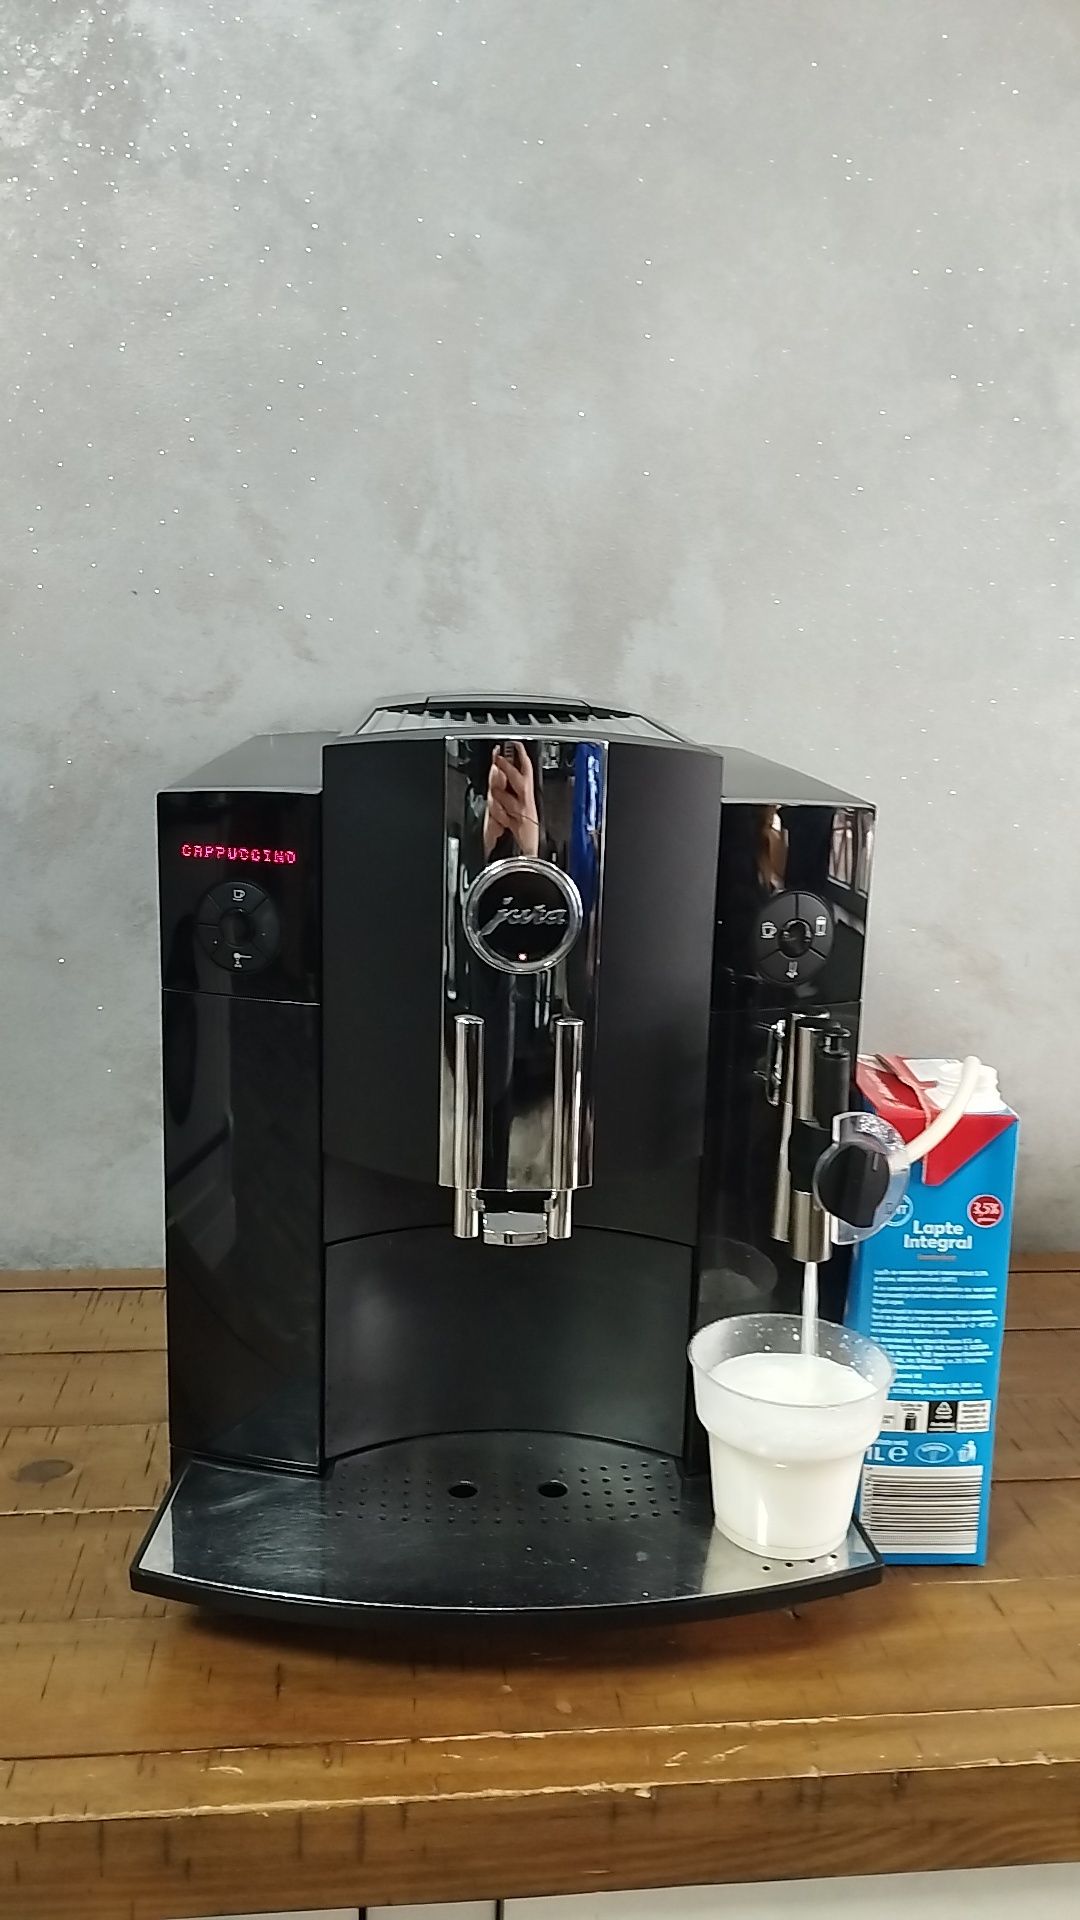 Espressor/aparat espressor cafea Jura C9 /transport gratuit